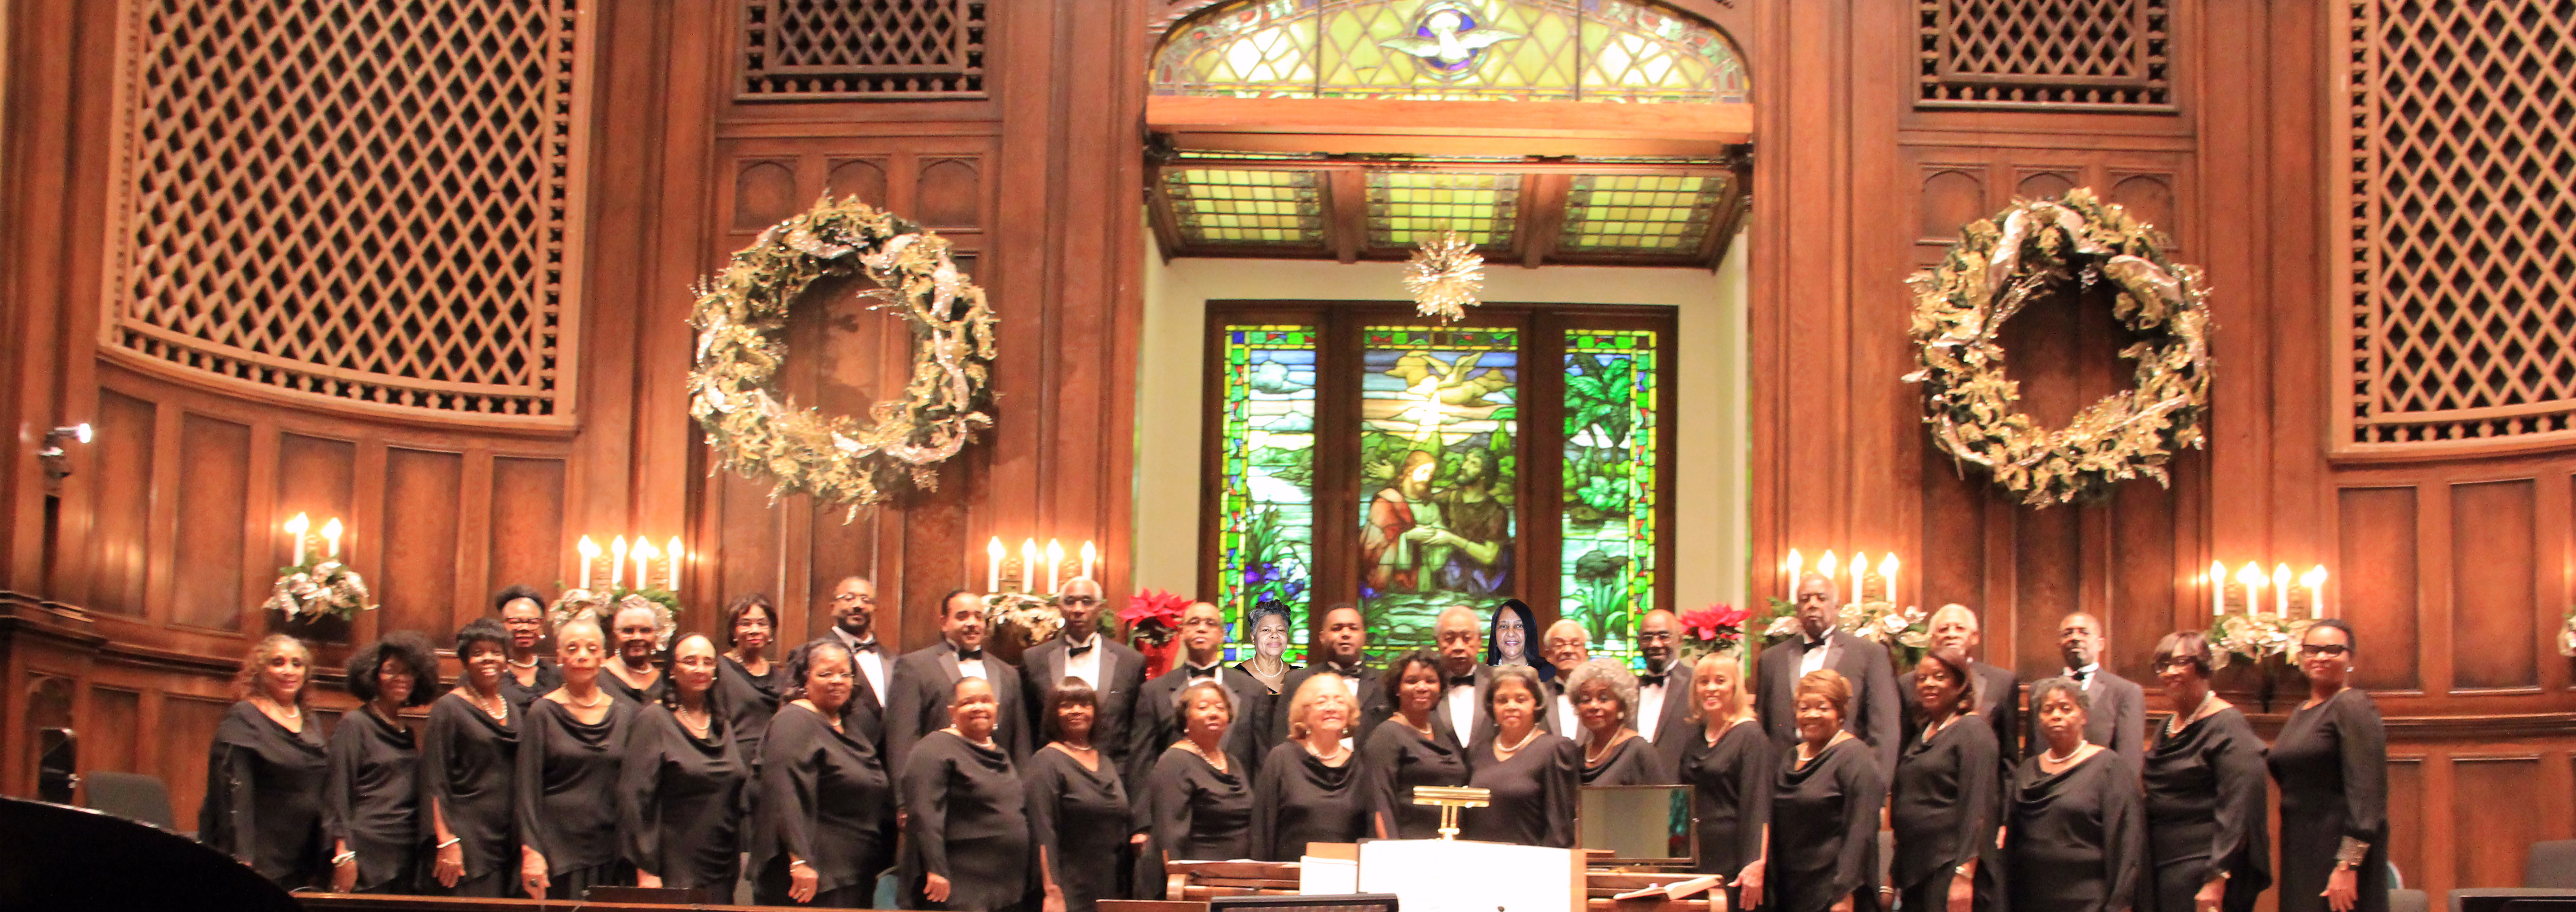 South Dallas Concert Choir